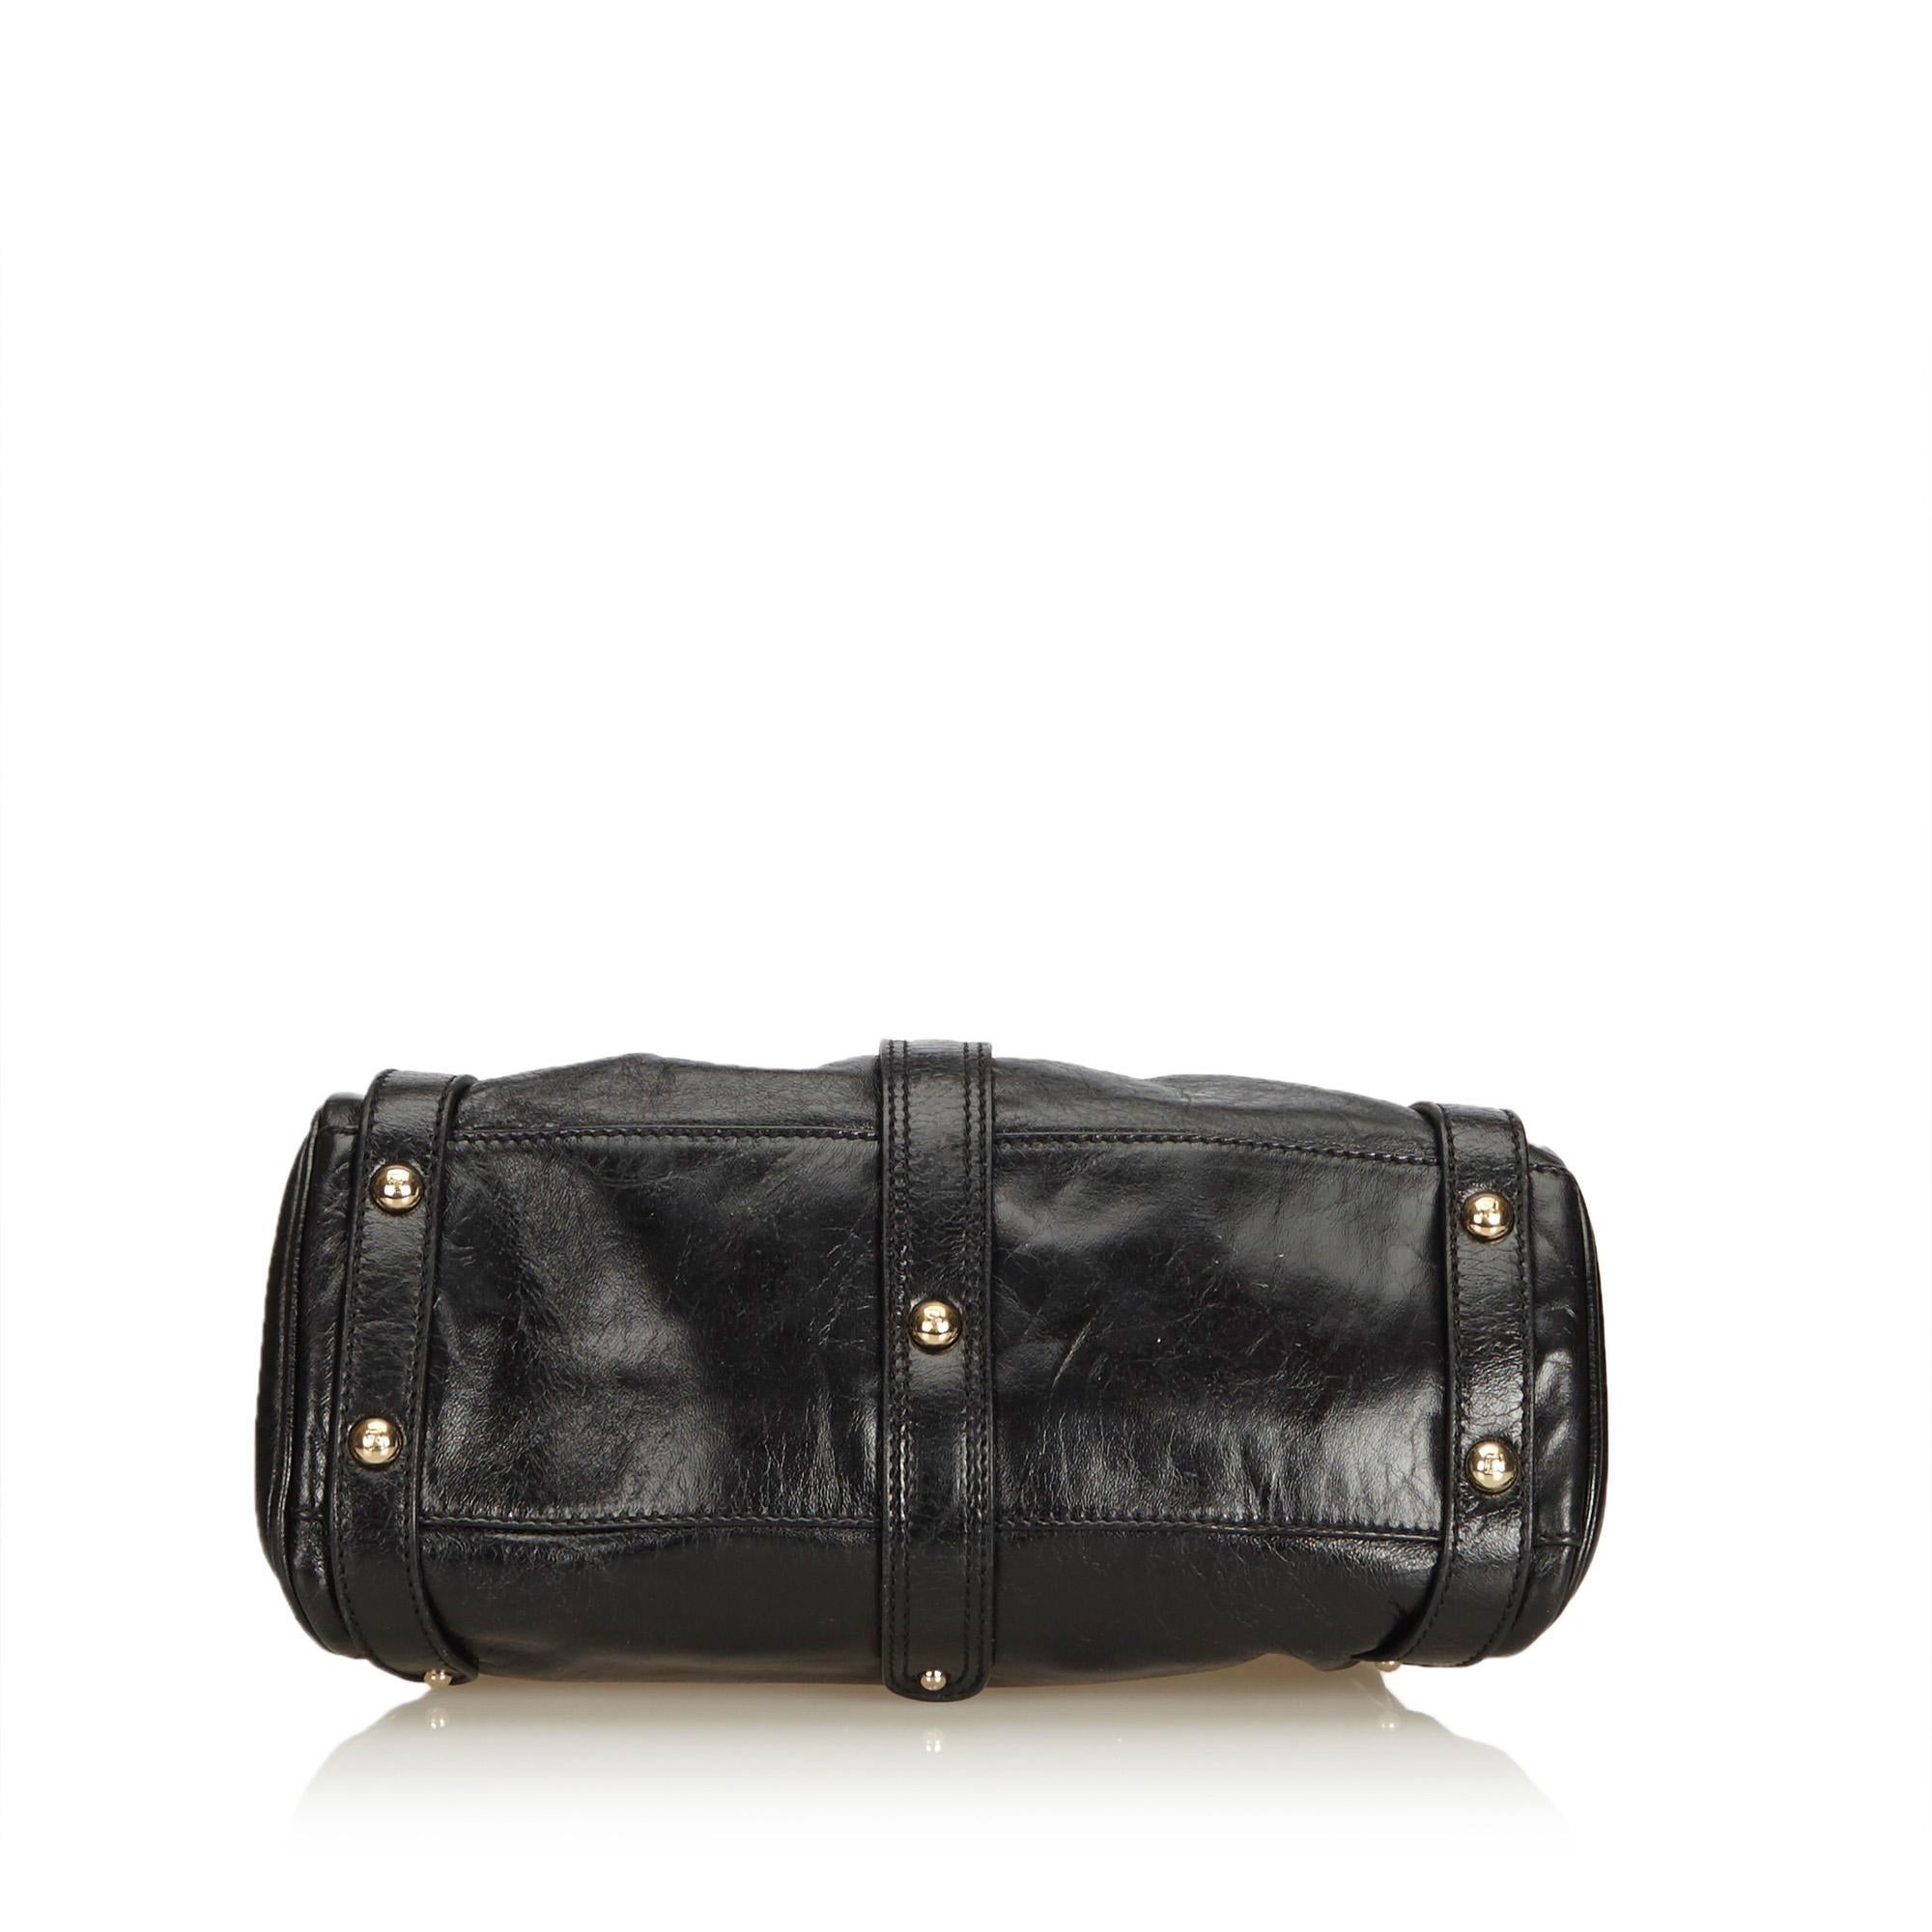 Women's or Men's Fendi Black Leather Handbag For Sale